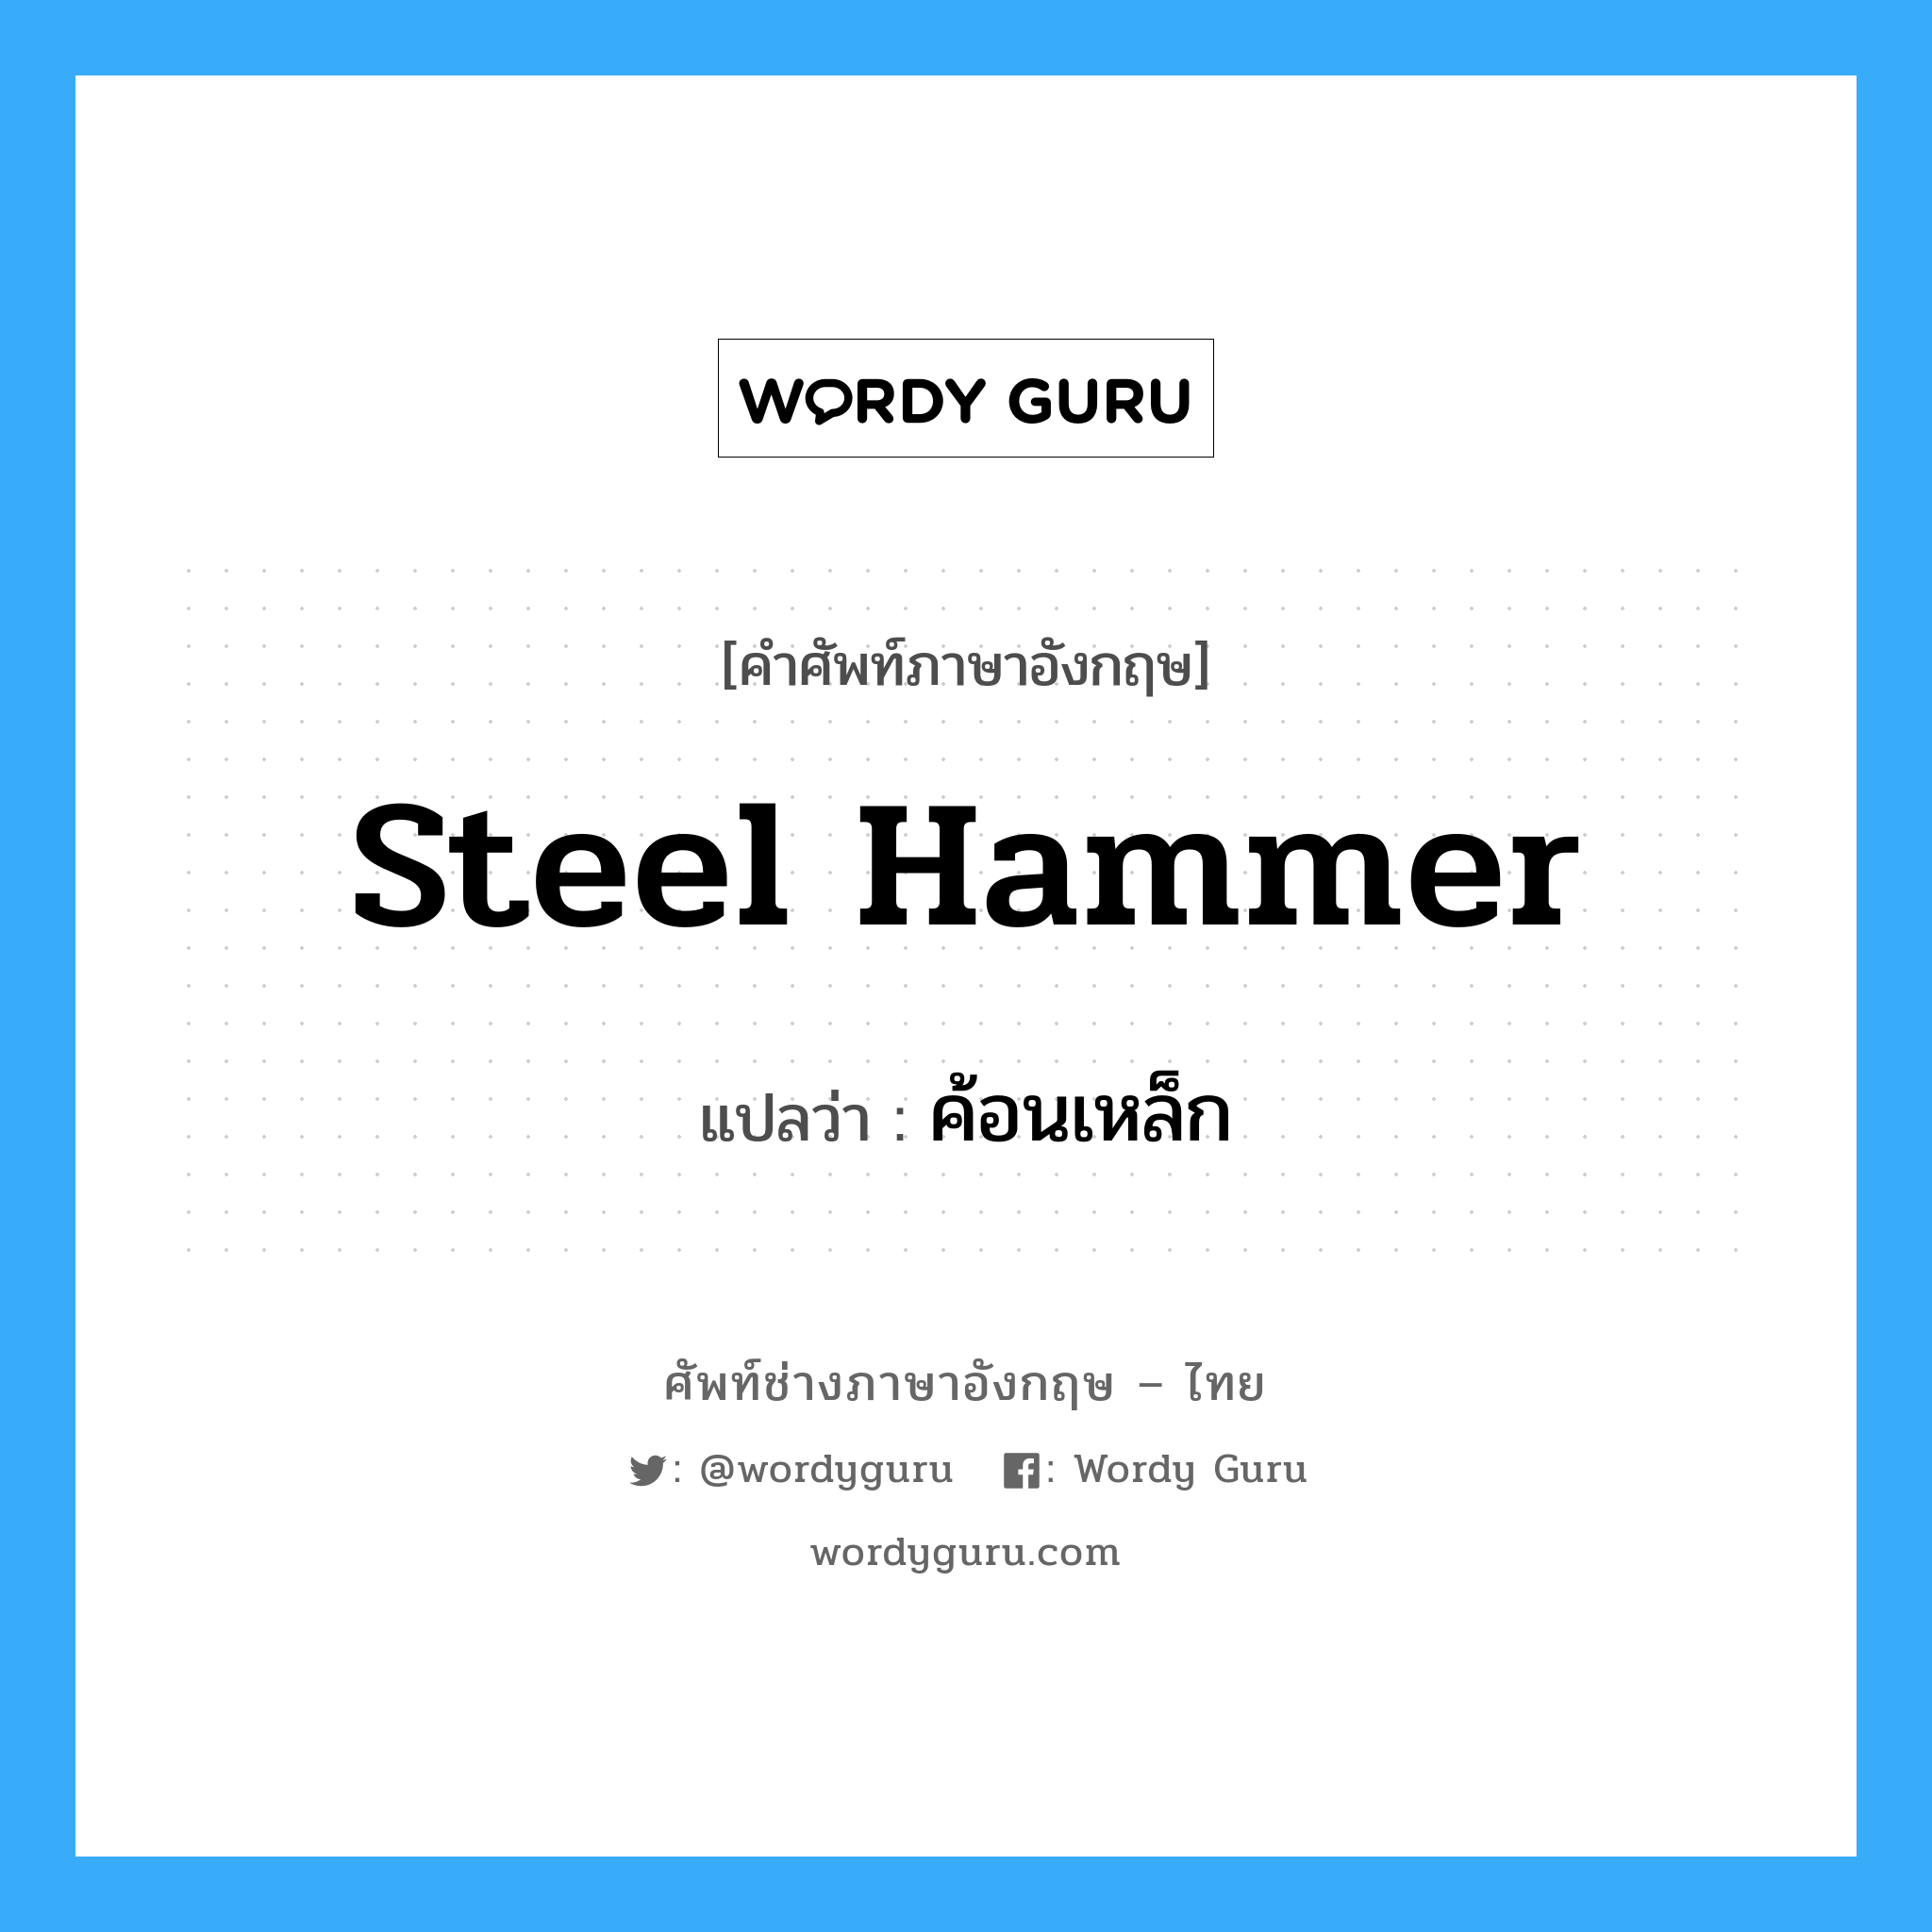 ค้อนเหล็ก ภาษาอังกฤษ?, คำศัพท์ช่างภาษาอังกฤษ - ไทย ค้อนเหล็ก คำศัพท์ภาษาอังกฤษ ค้อนเหล็ก แปลว่า steel hammer